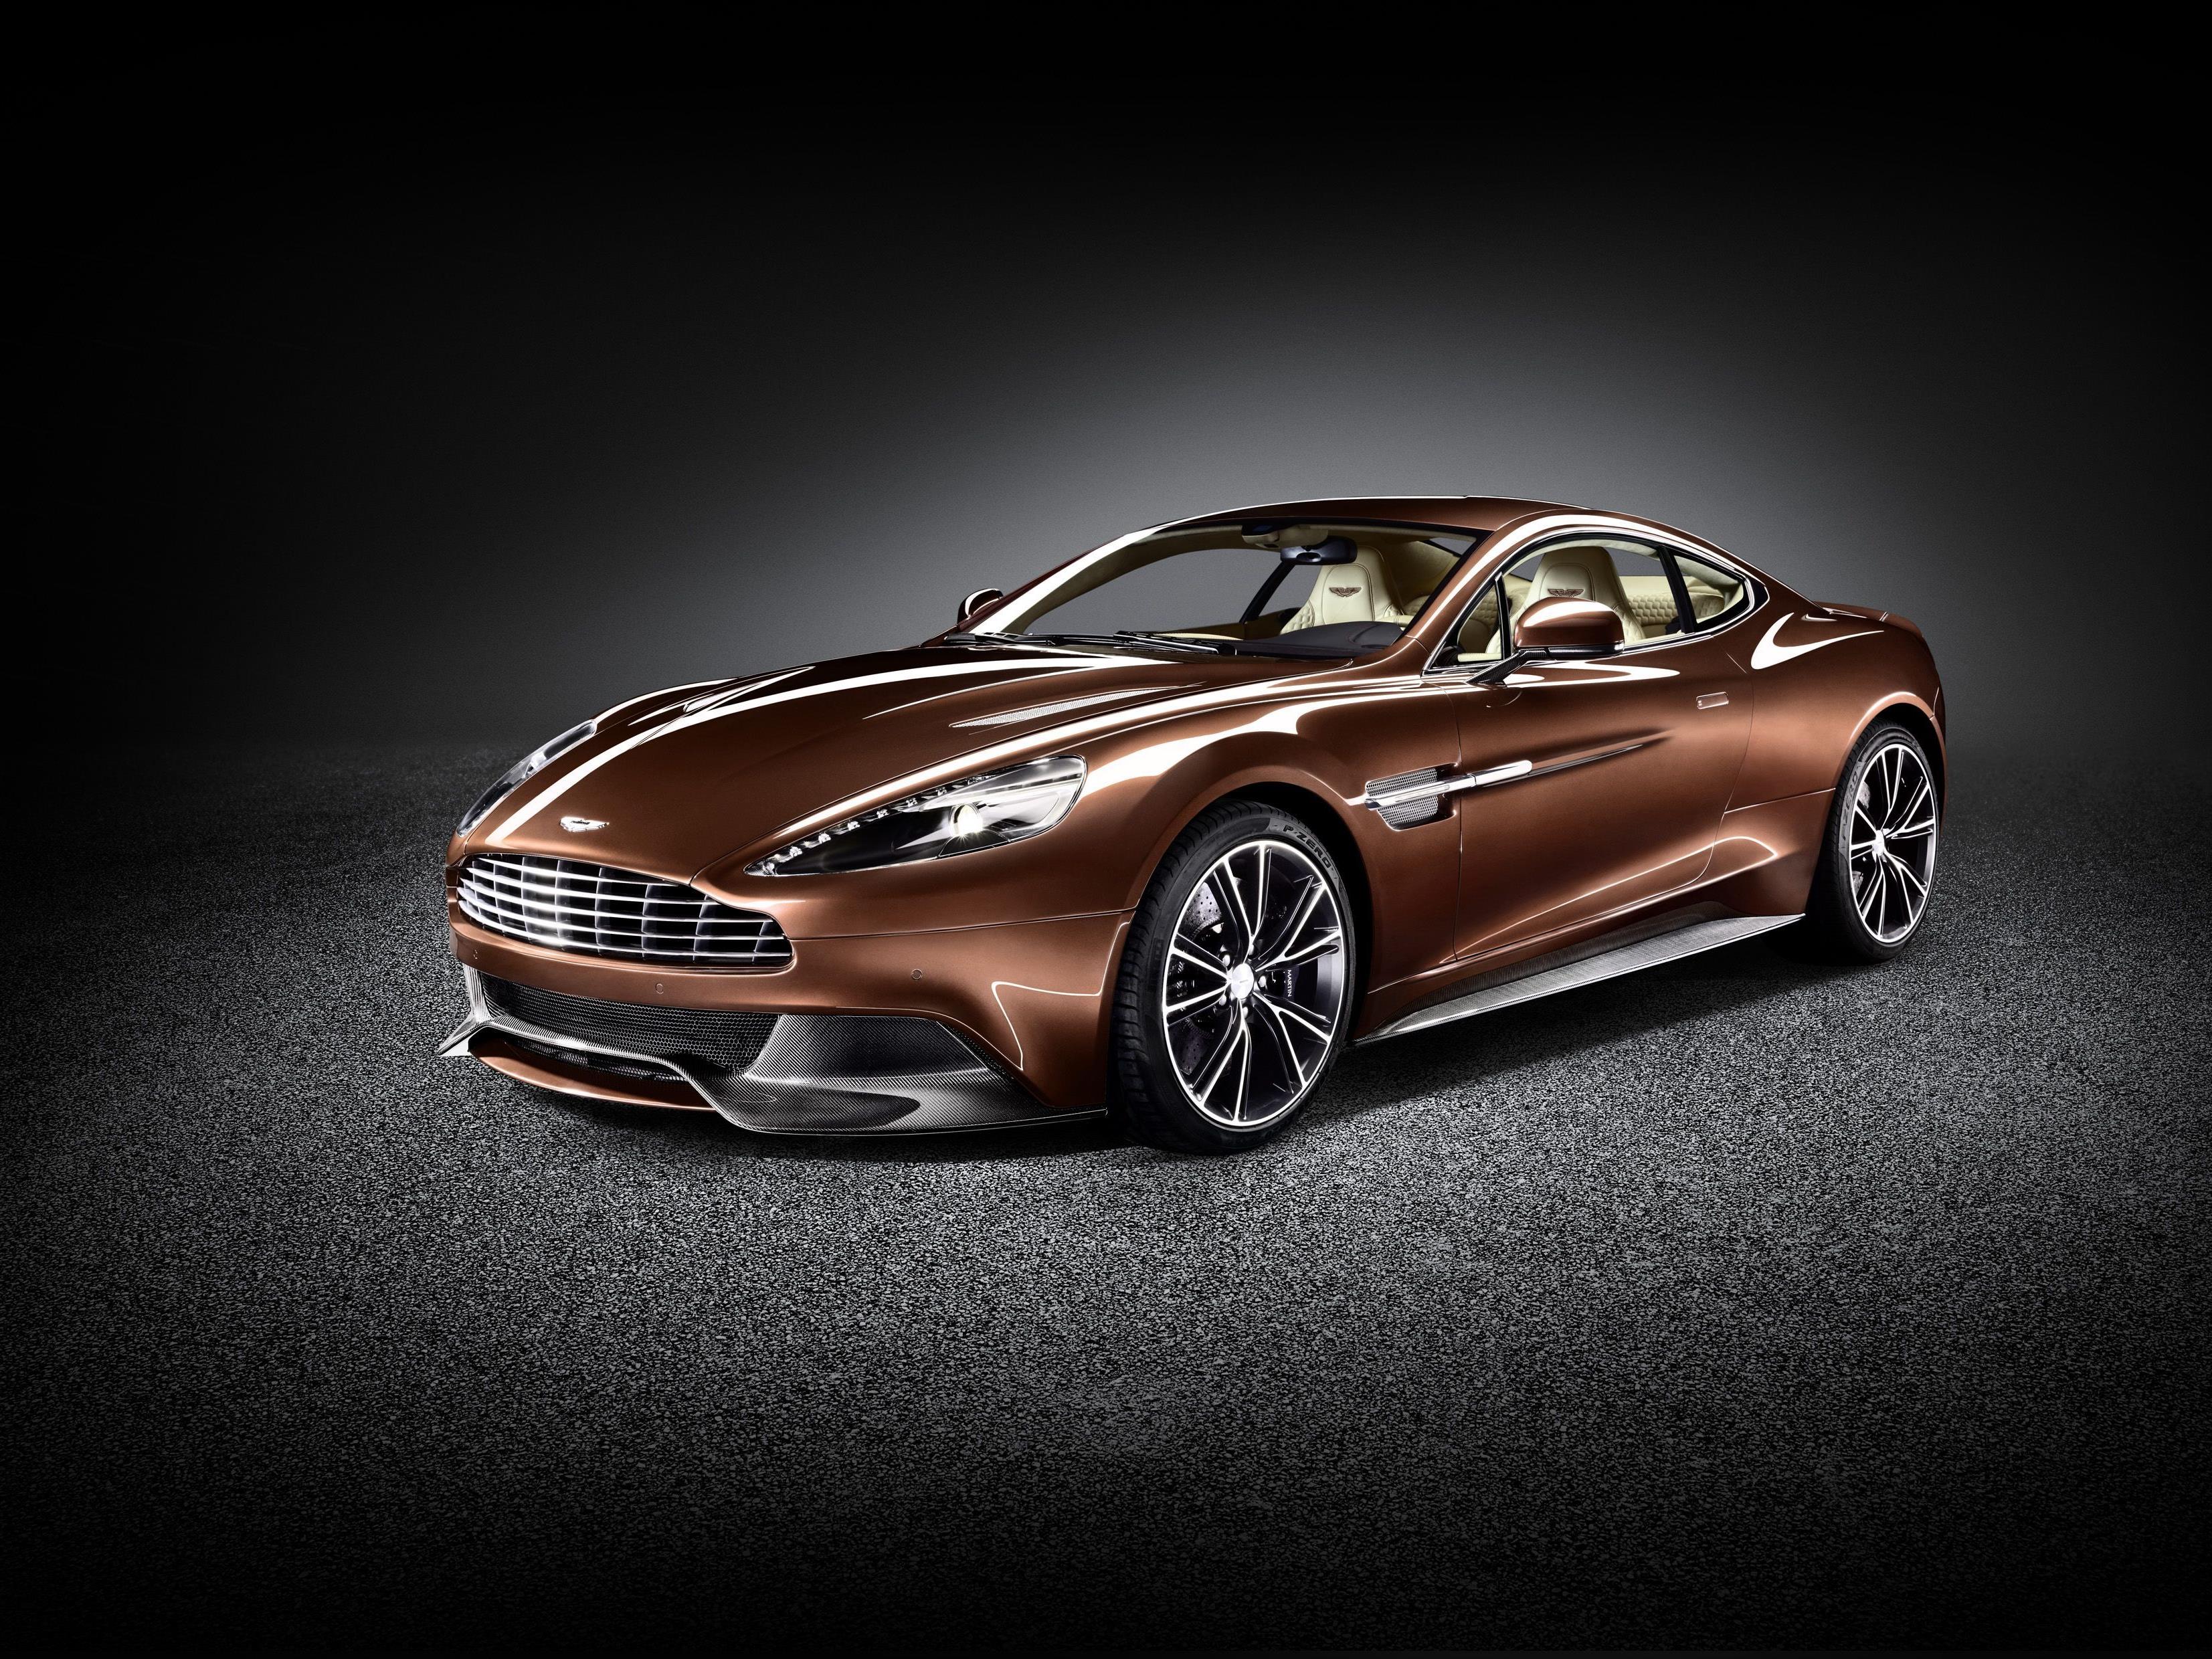 Ein Traum aus Aluminium und Karbon. Durch die neu konzipierte Karosserie wurde das Gewicht des Aston Martin Vanquish erheblich reduziert.